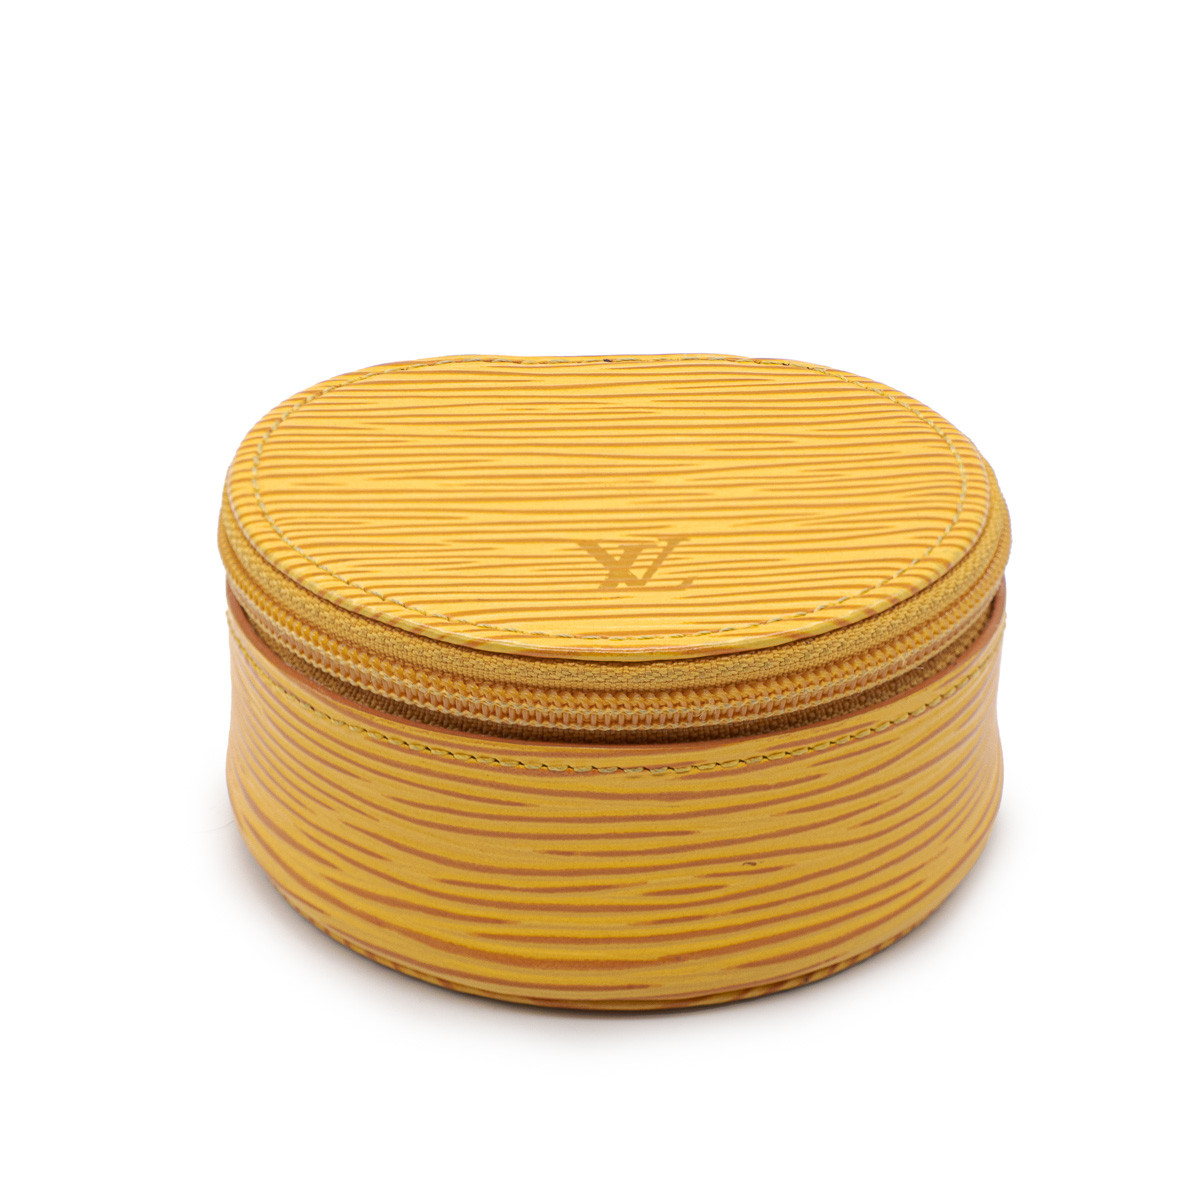 Louis Vuitton rare yellow epi leather jewelry box.